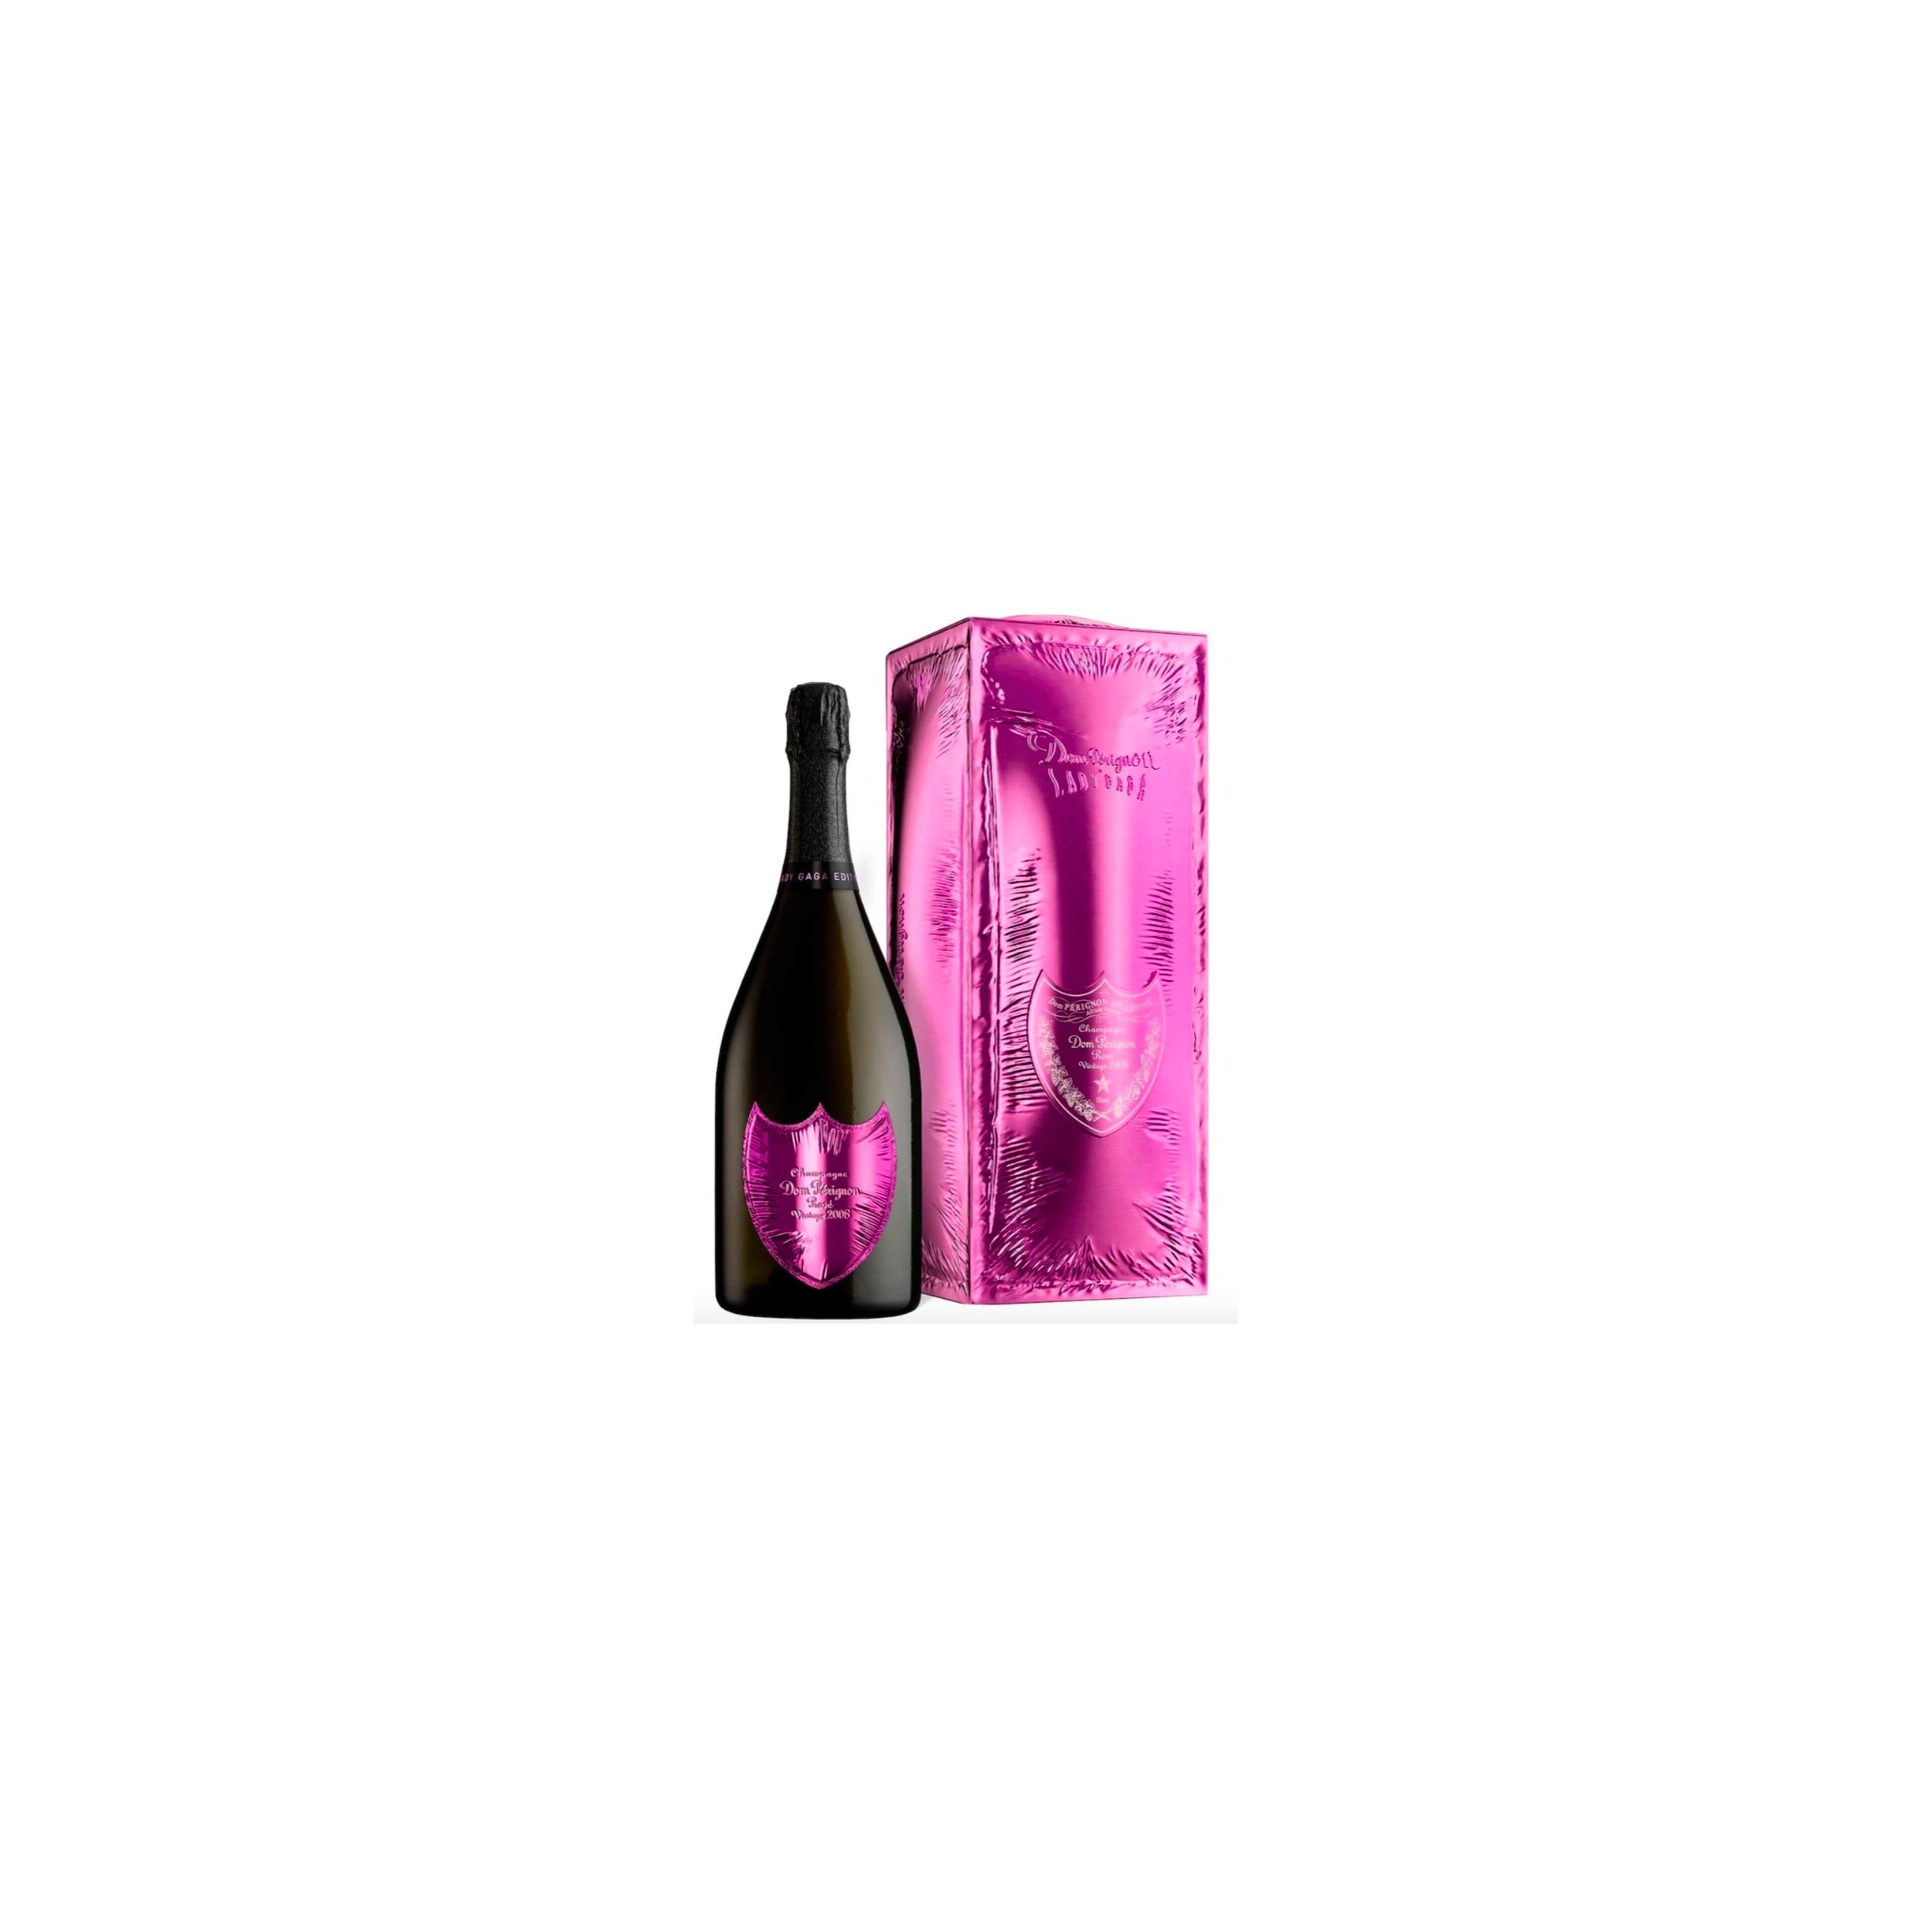 Dom Perignon 2006 Rosè limited edition Lady Gaga champagne | corso101